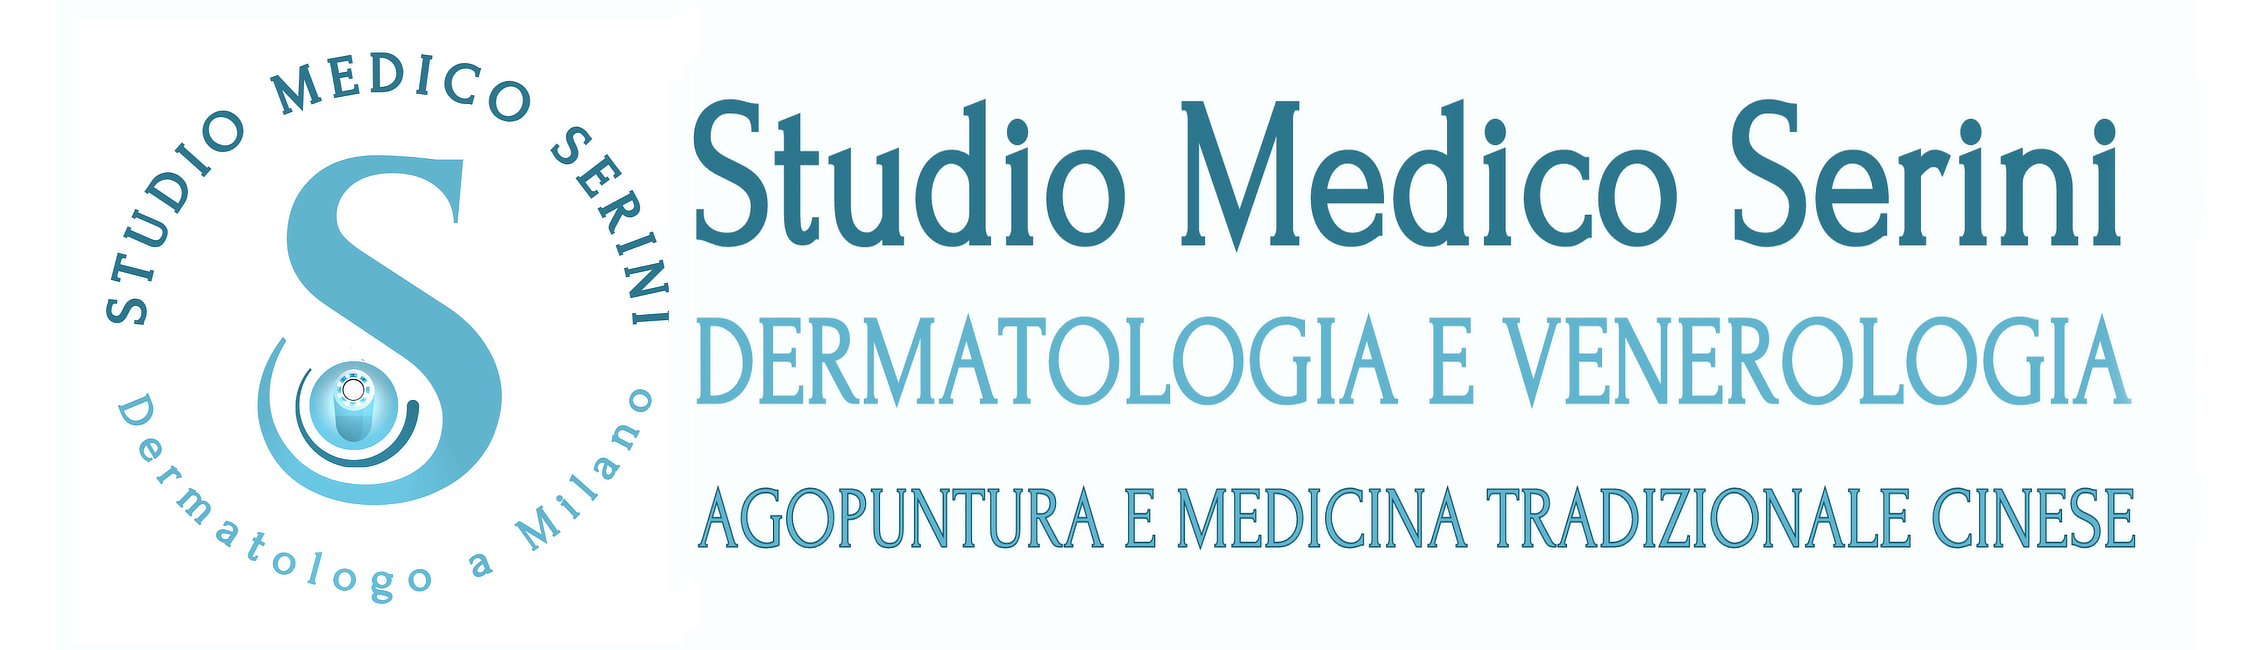 Dermatologo Milano - Studio Medico Serini